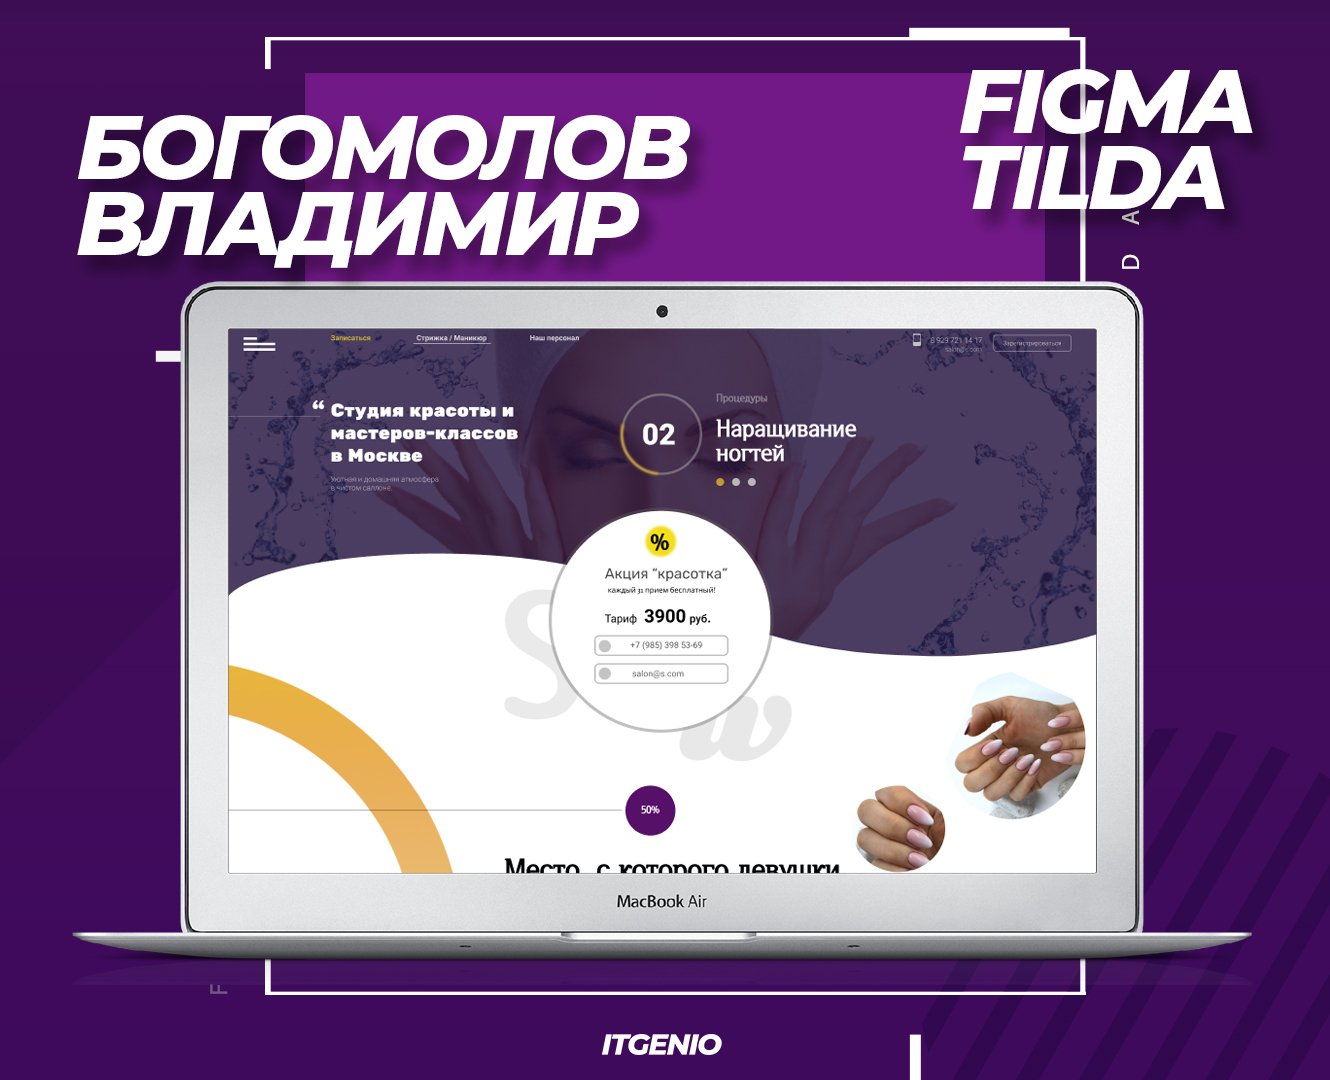 Айтигенио – Онлайн курсы по веб-дизайну и созданию сайтов в Figma и Tilda для детей 9-18 лет, фото курса 2